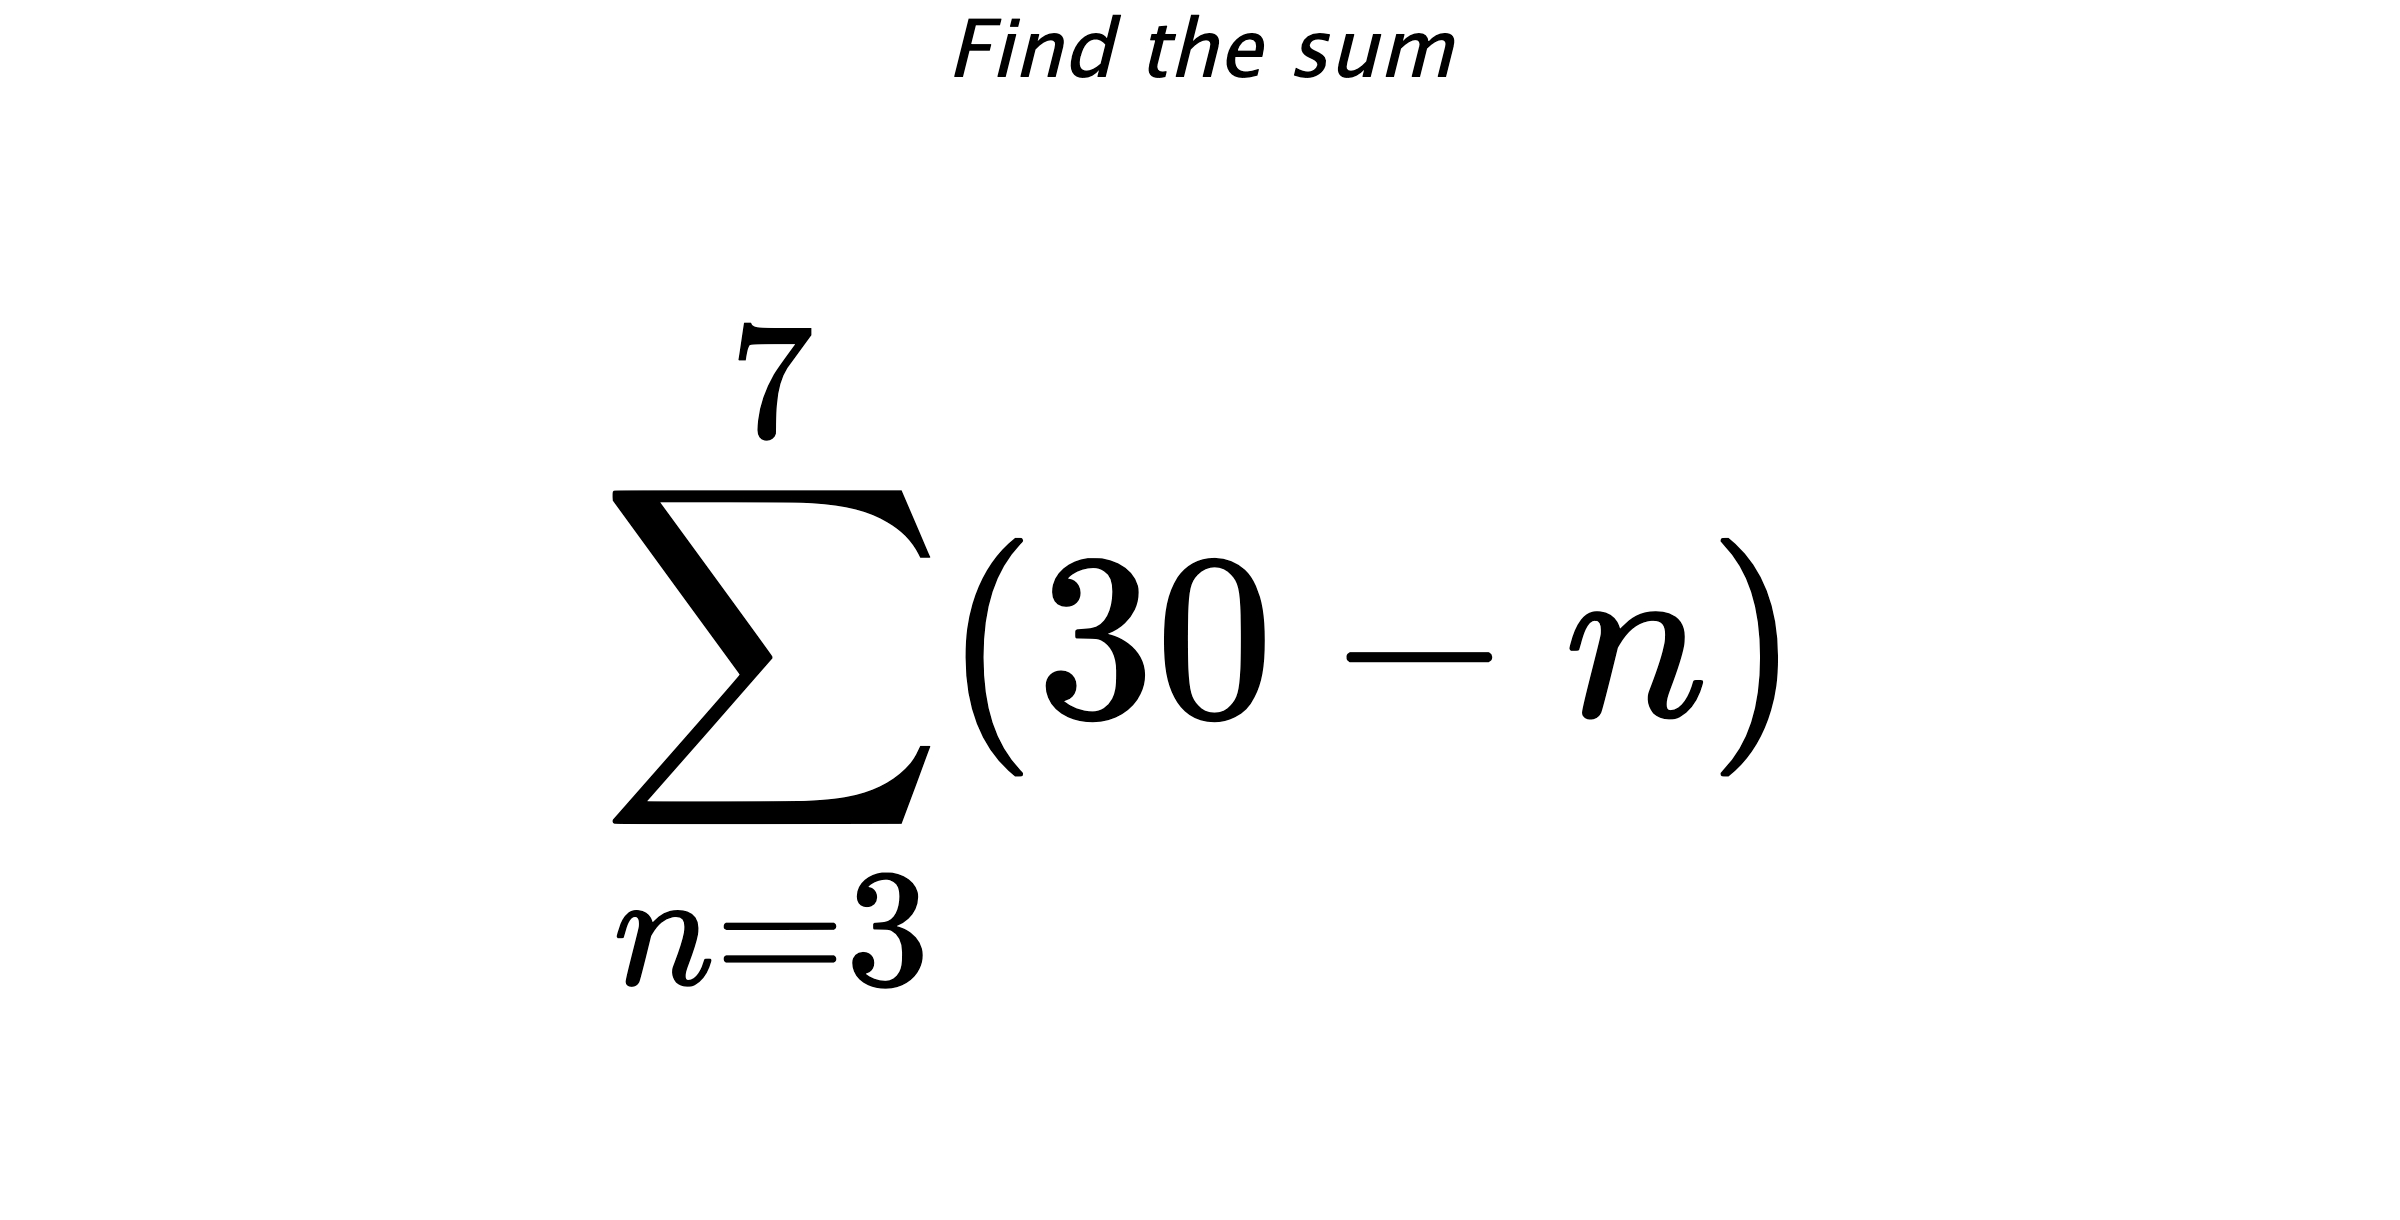 Find the sum $$ \sum_{n=3}^{7} (30-n)$$